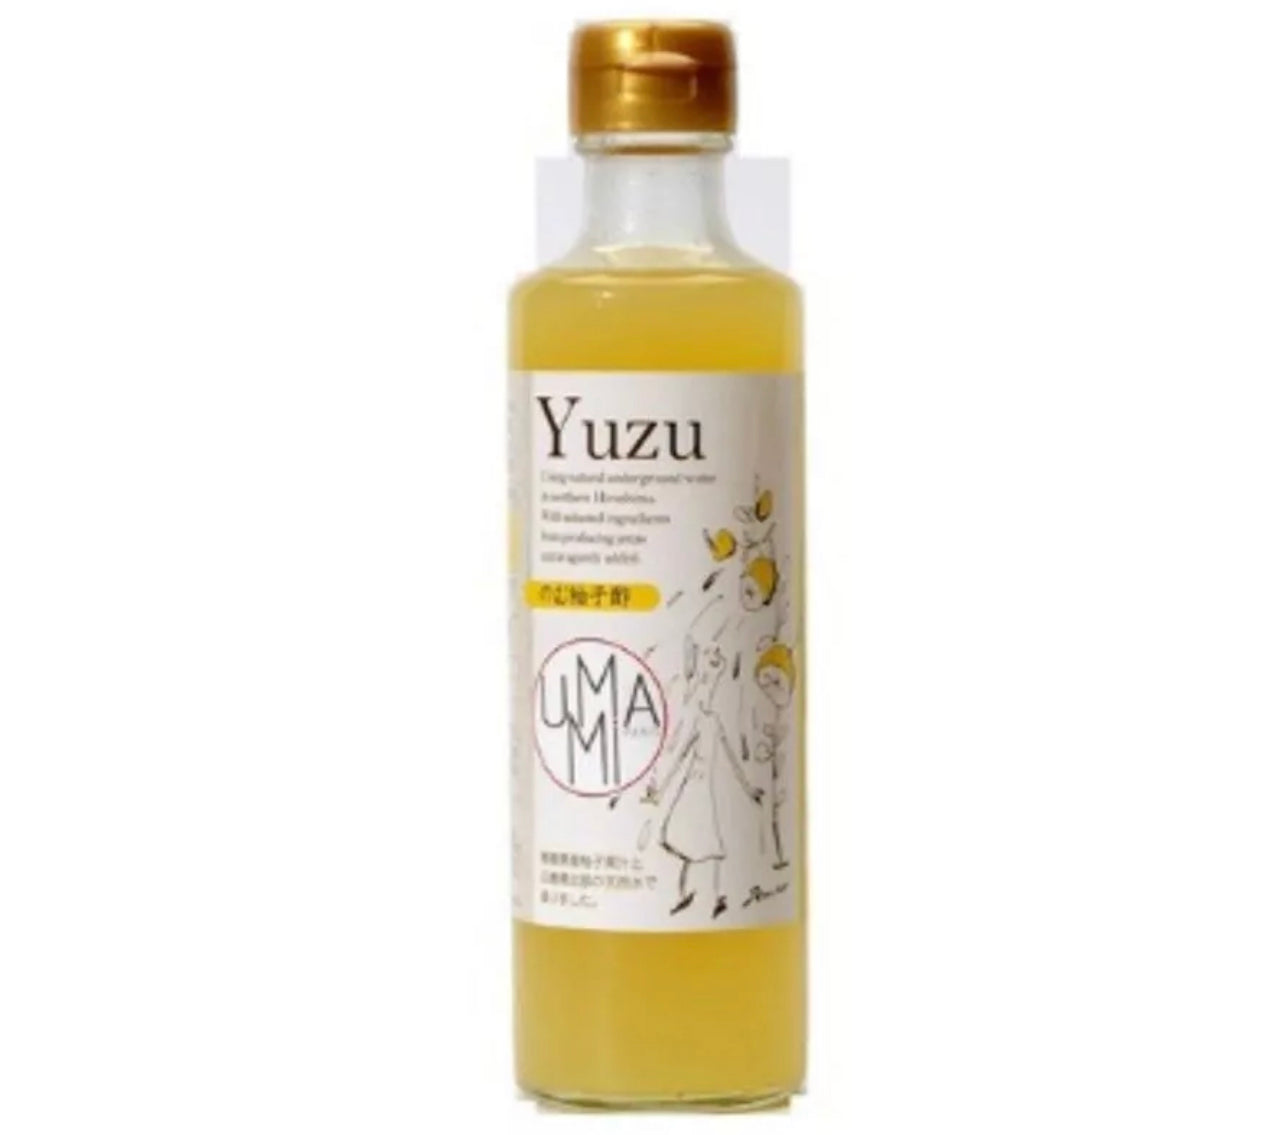 Vinagre de yuzu y miel - 27cl